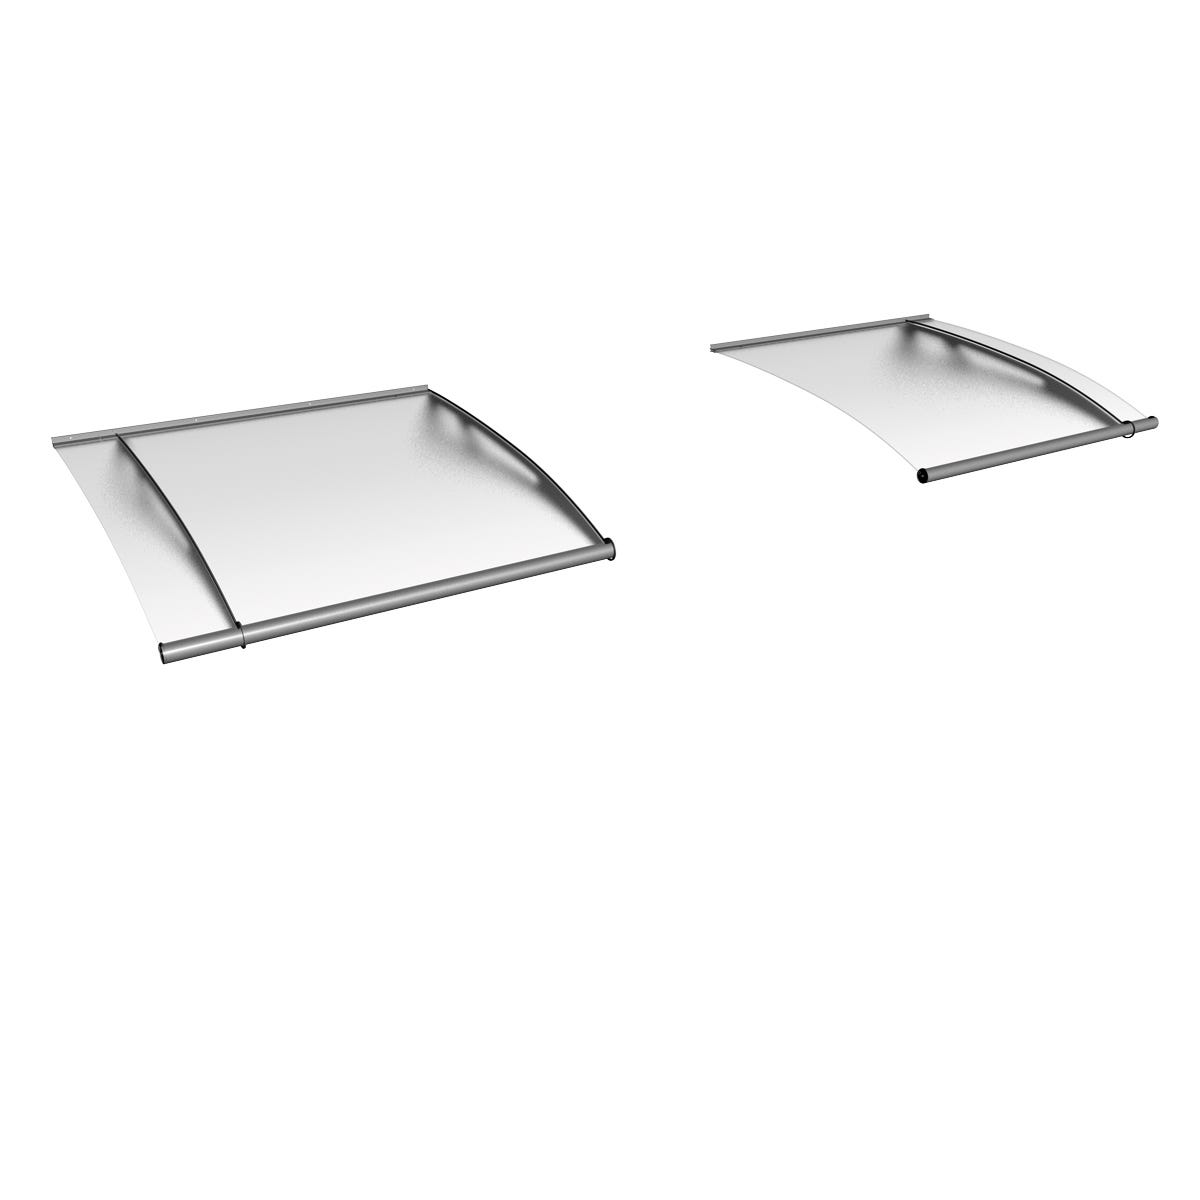 Schulte marquise auvent de porte, module de base, 287 x 142 cm, verre acrylique opaque, fixation inox brossé mat XL 5